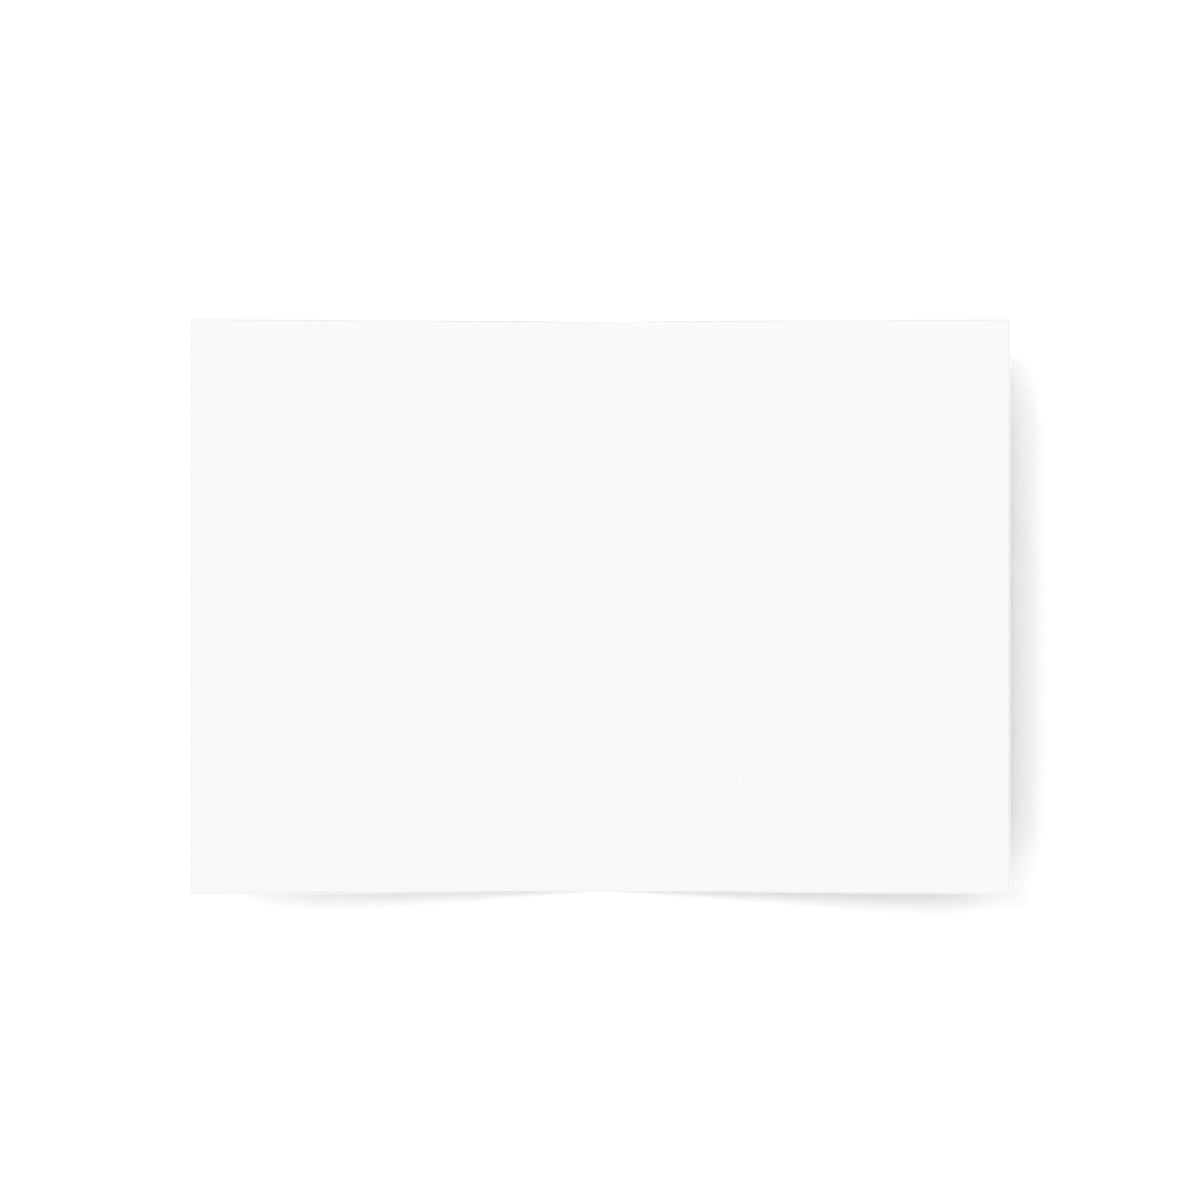 Crested Butte Folded Matte Notecards + Envelopes (10pcs)